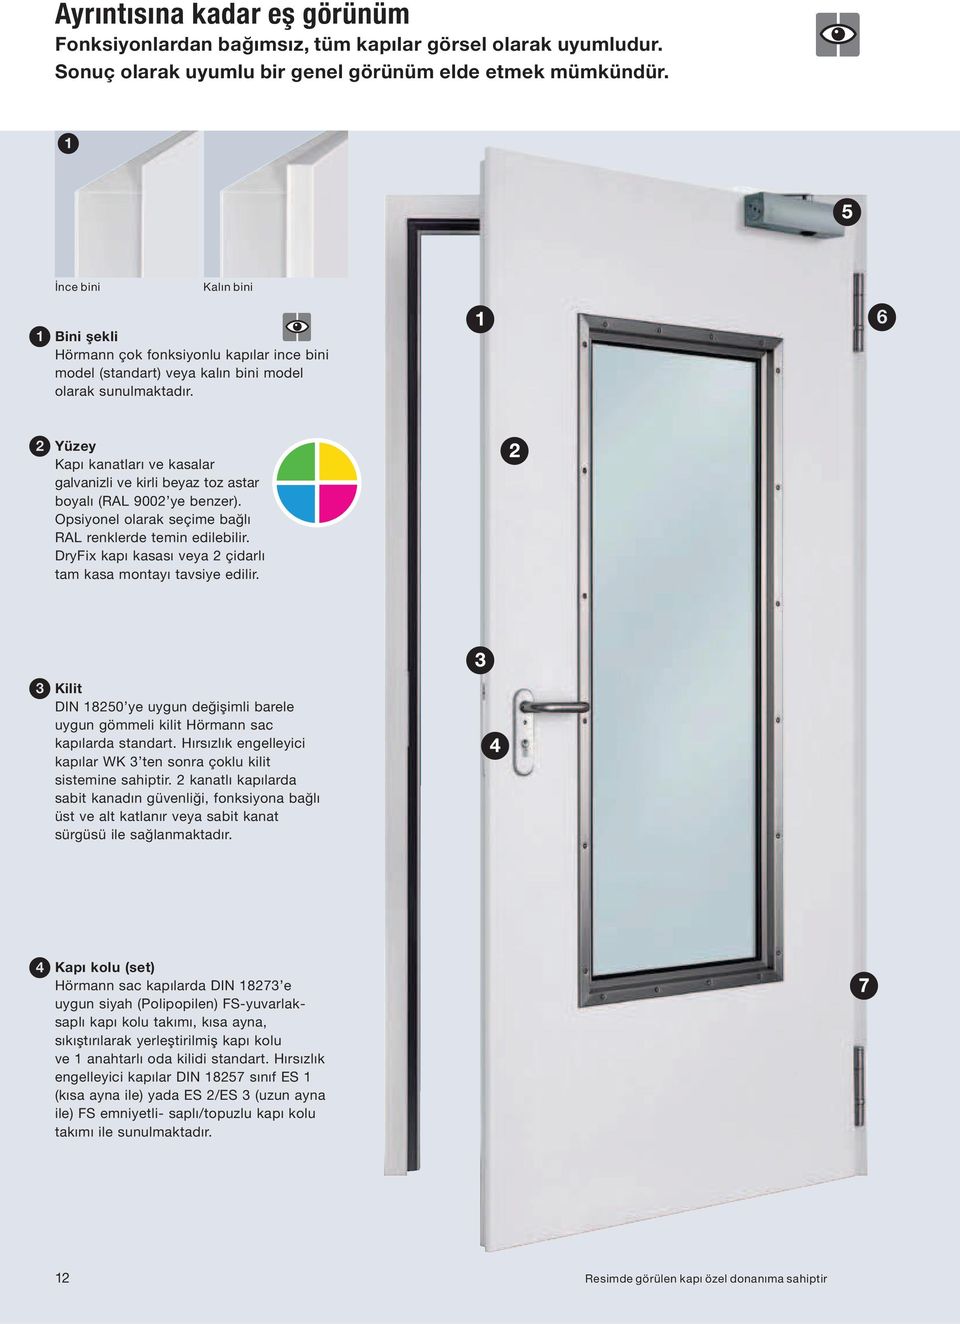 Yüzey Kapı kanatları ve kasalar galvanizli ve kirli beyaz toz astar boyalı (RAL 9002 ye benzer). Opsiyonel olarak seçime bağlı RAL renklerde temin edilebilir.